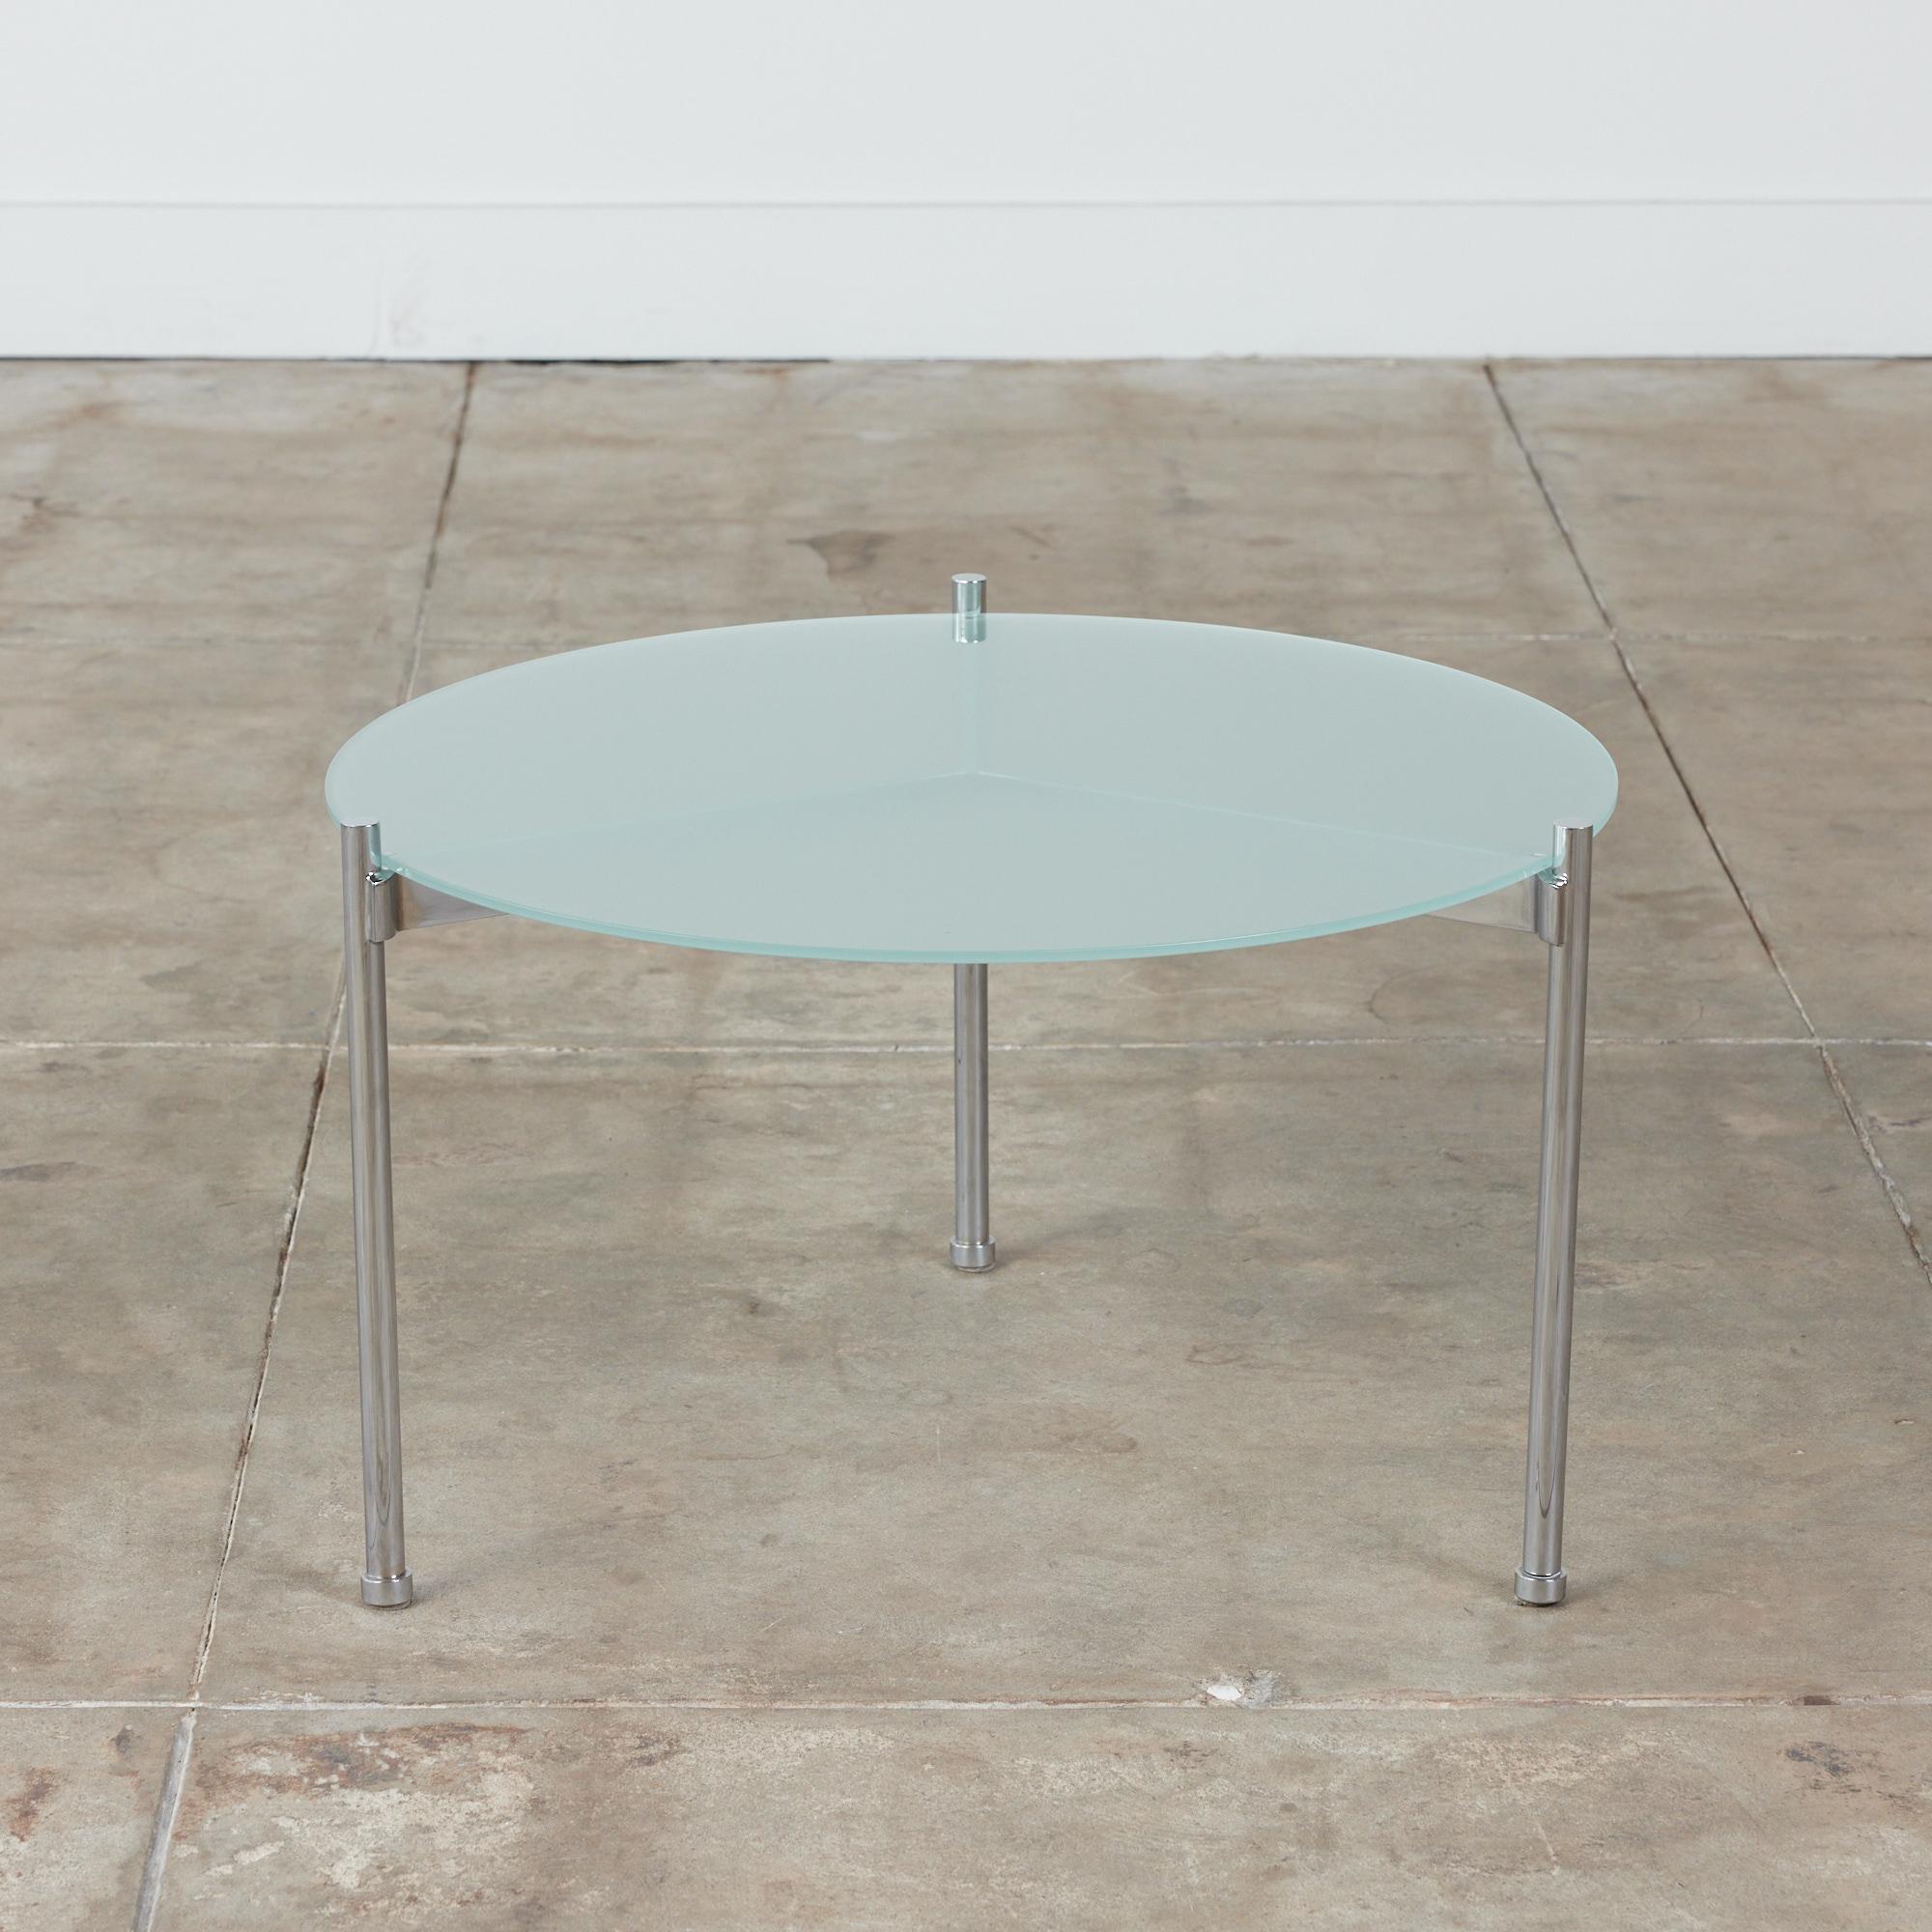 Table d'appoint minimaliste de Ward Bennett pour Brickel Associates, c.1970, États-Unis. La table ronde est dotée d'une structure en acier chromé avec trois pieds tubulaires. La table doit son nom aux trois branches qui reposent juste sous le